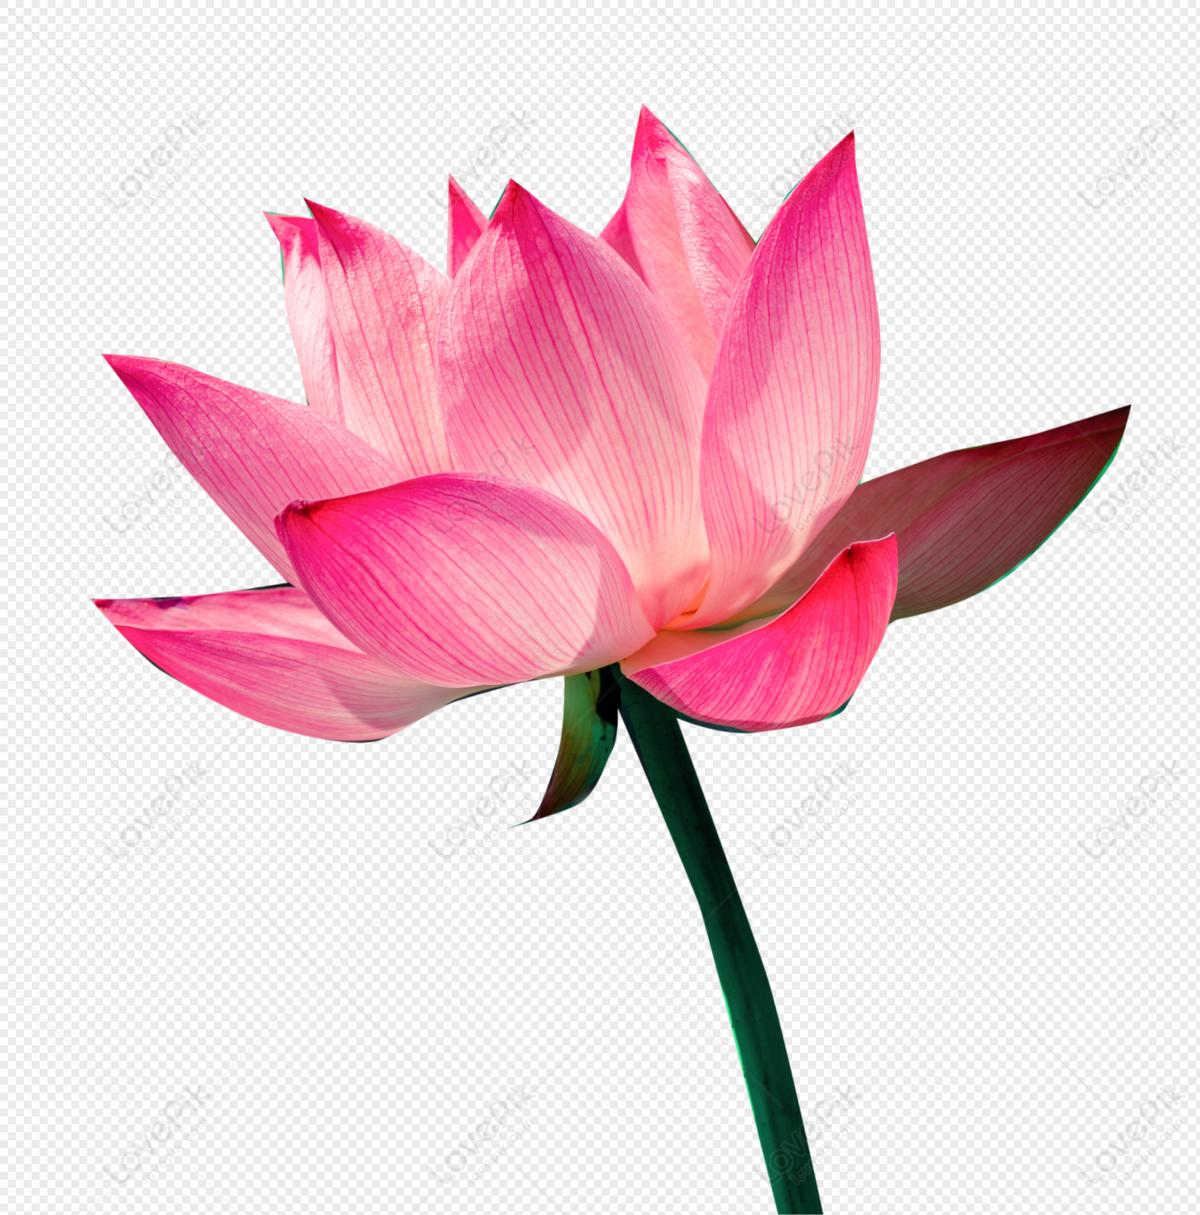 Hình ảnh hoa sen hồng sẽ chinh phục trái tim bạn bởi sắc hồng tươi tắn và những đường nét tinh tế trên cánh hoa. Khám phá ngay để cảm nhận vẻ đẹp tuyệt vời của loài hoa này.